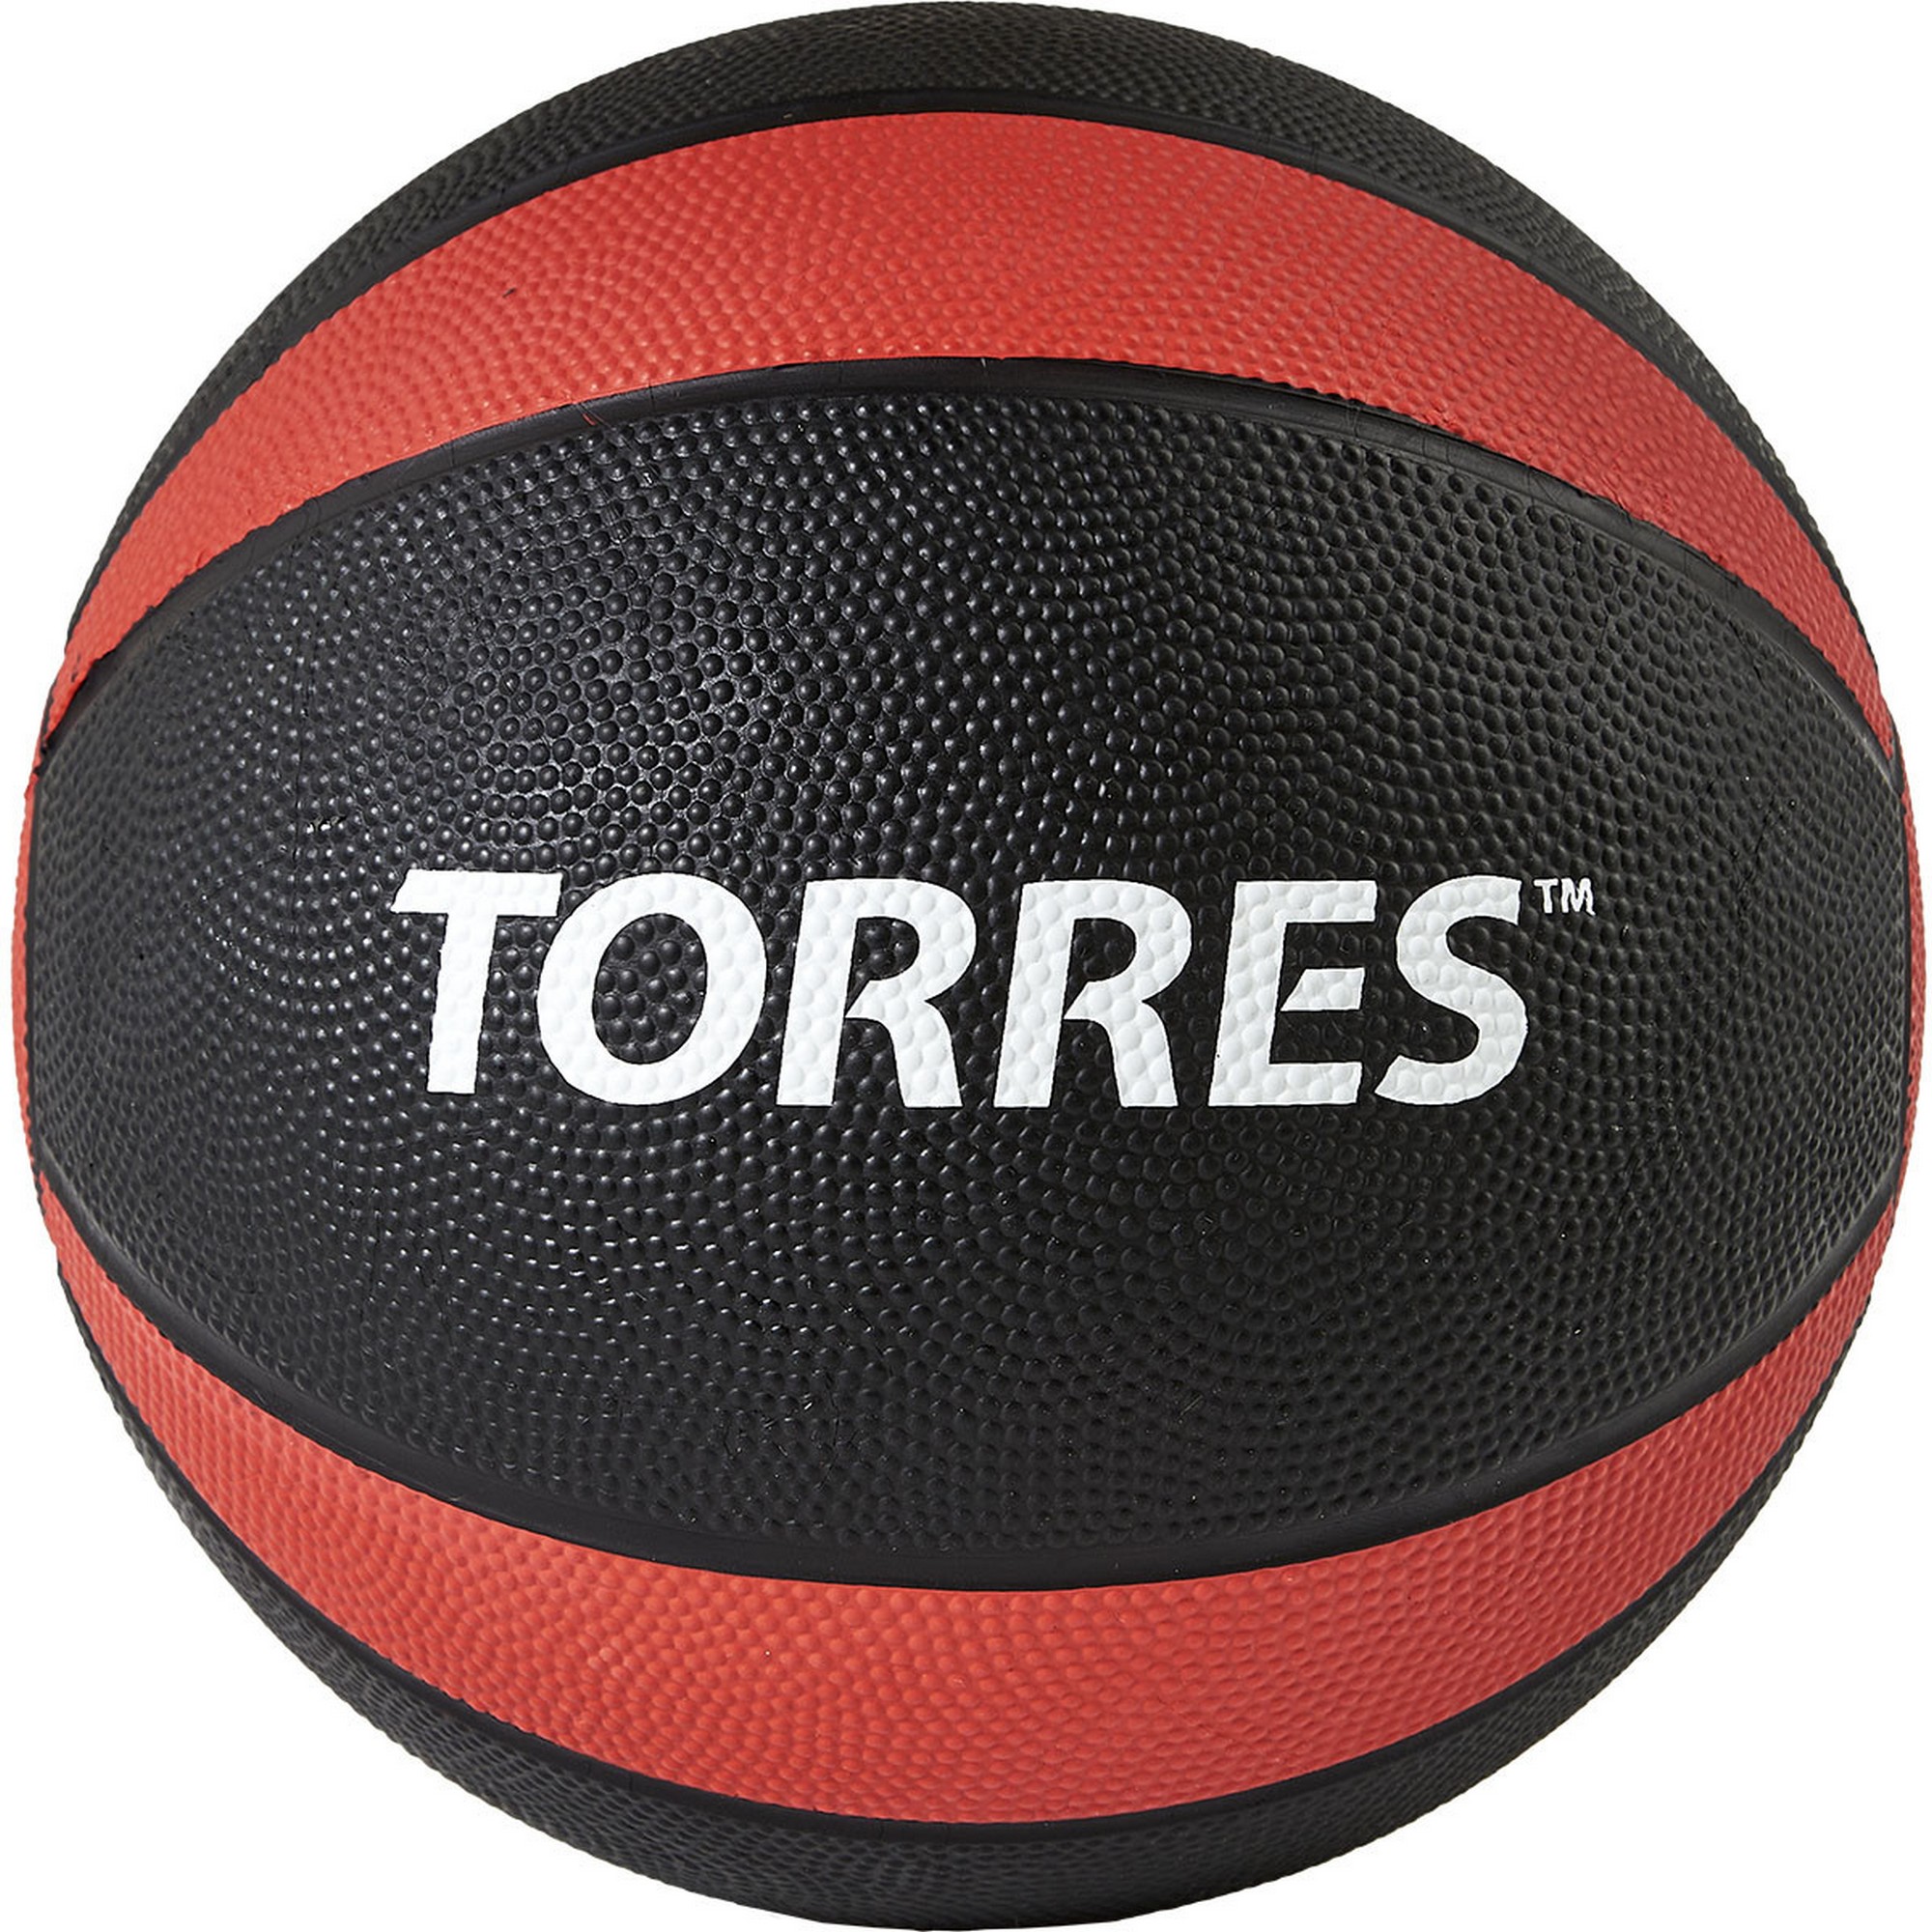  6 Torres AL00226 --